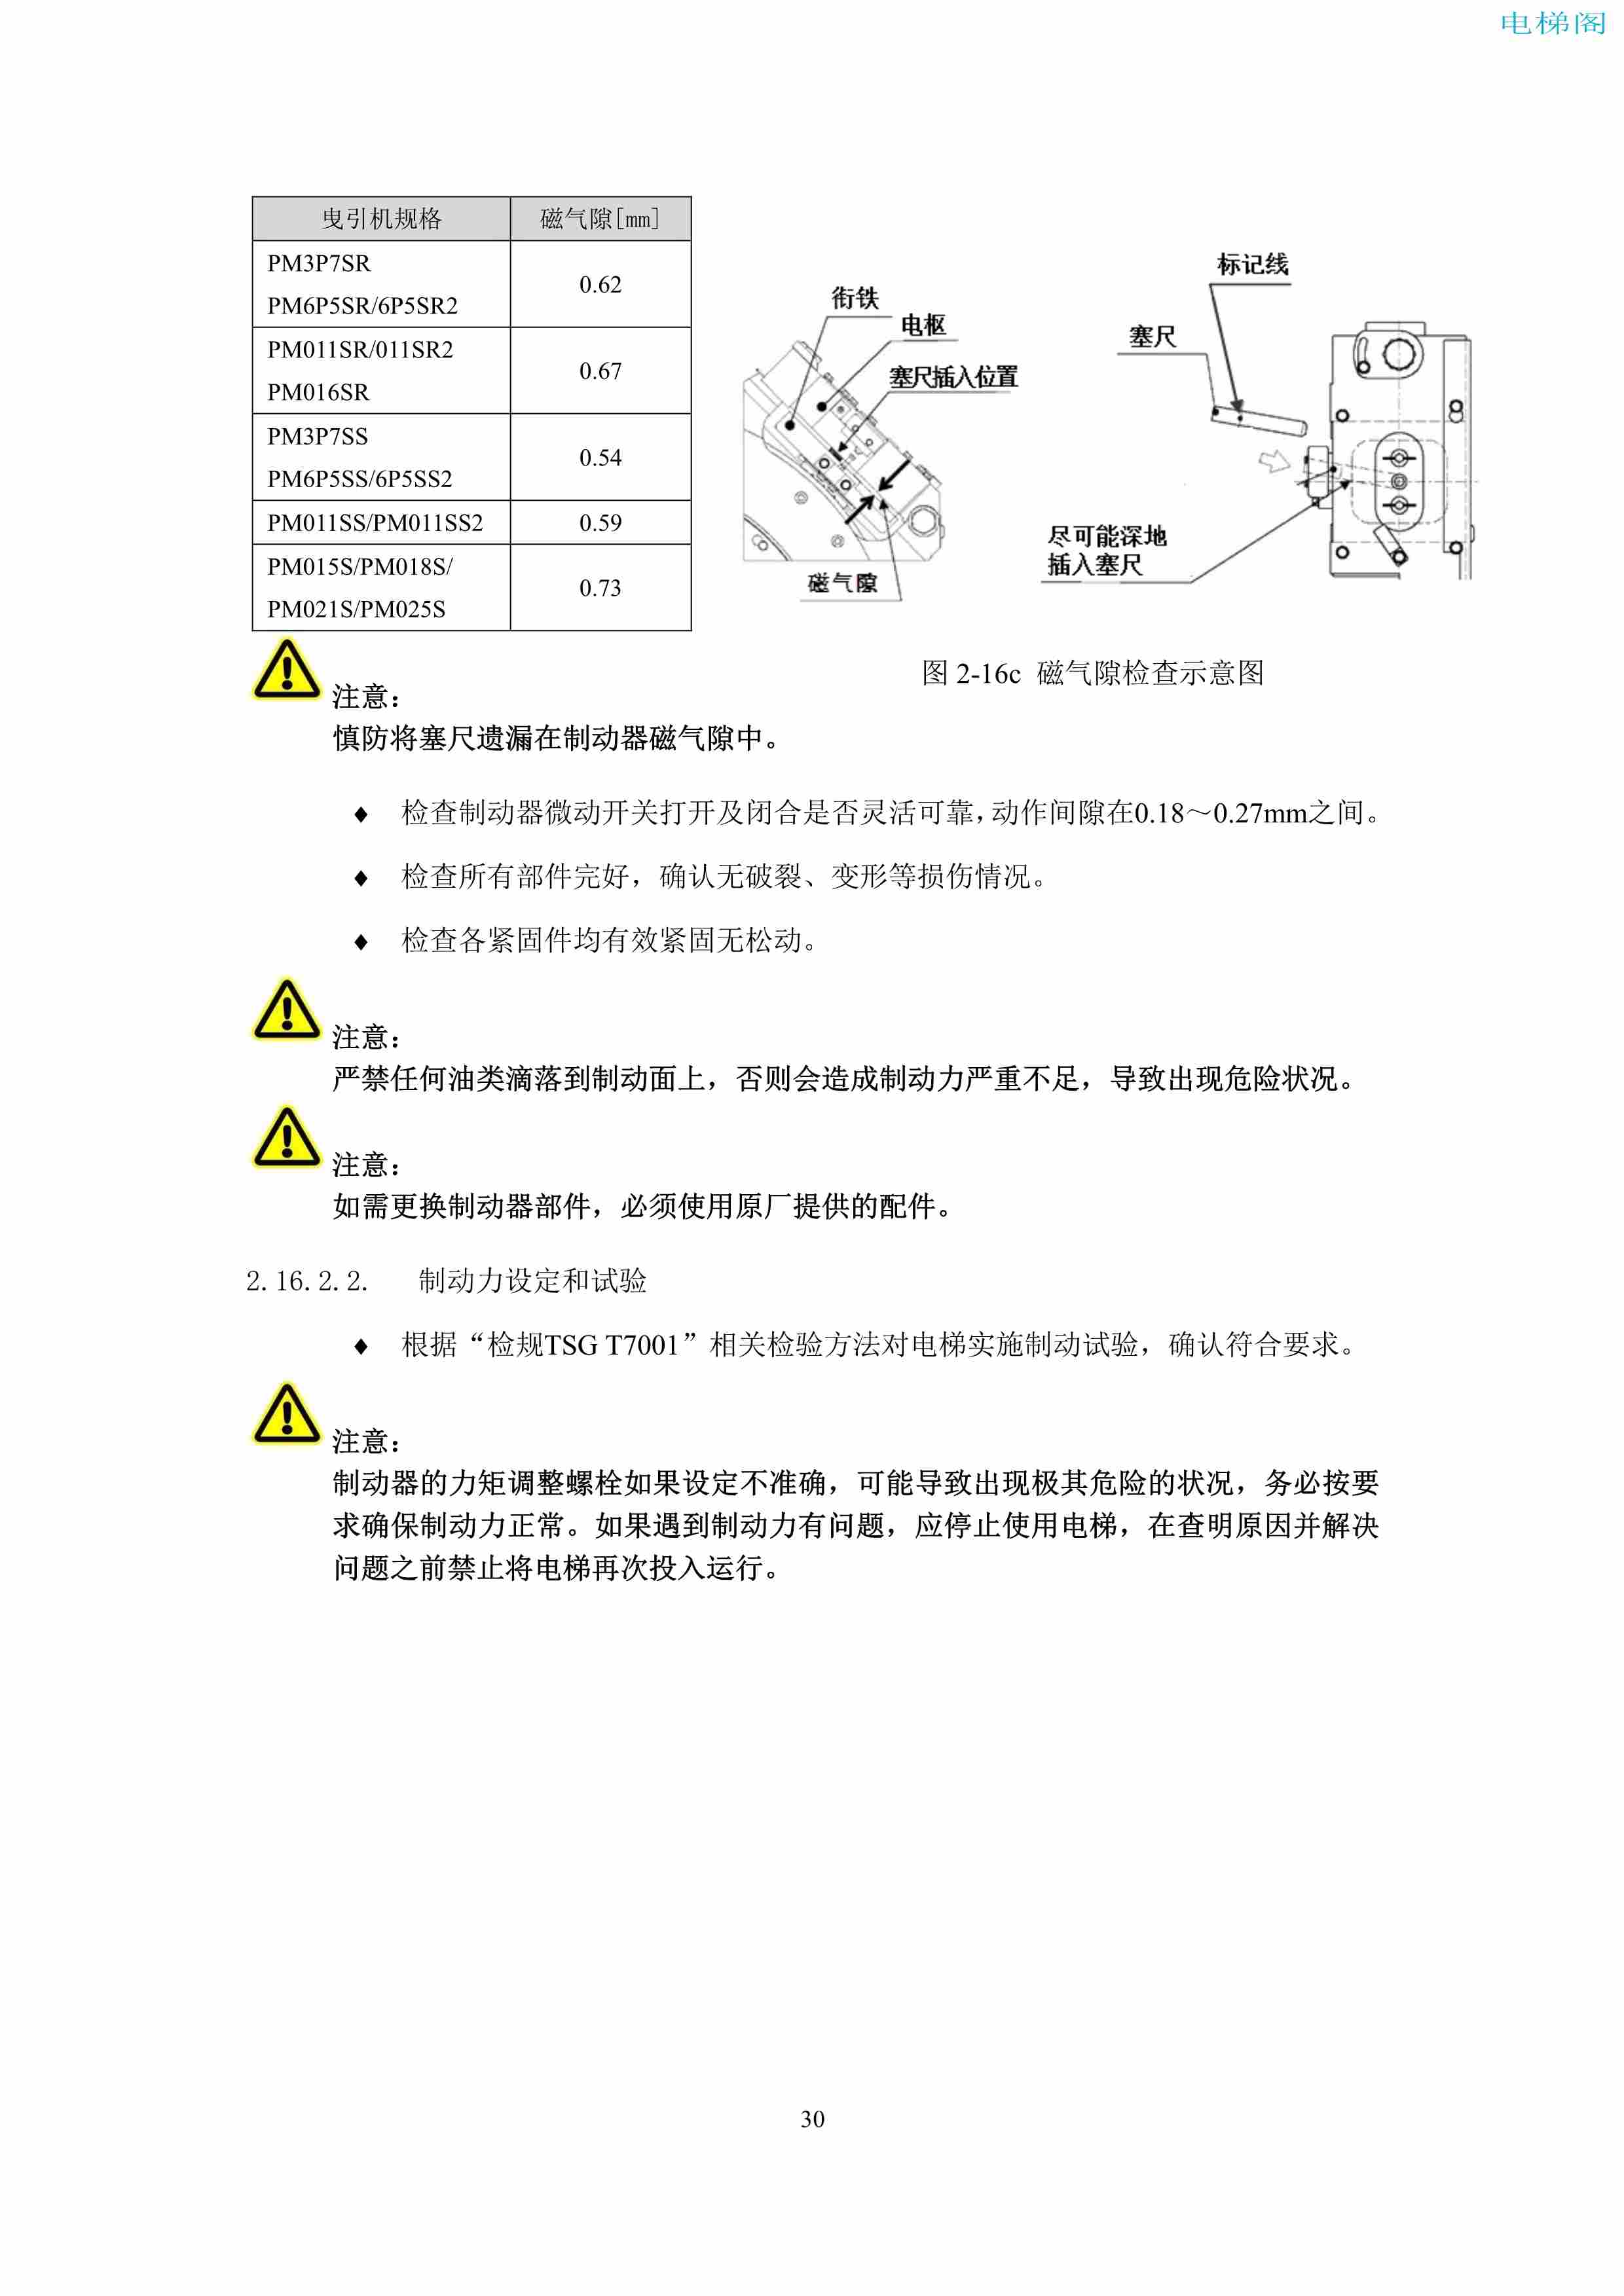 上海三菱电梯有限公司电梯制动器维护作业要领汇编_32.jpg